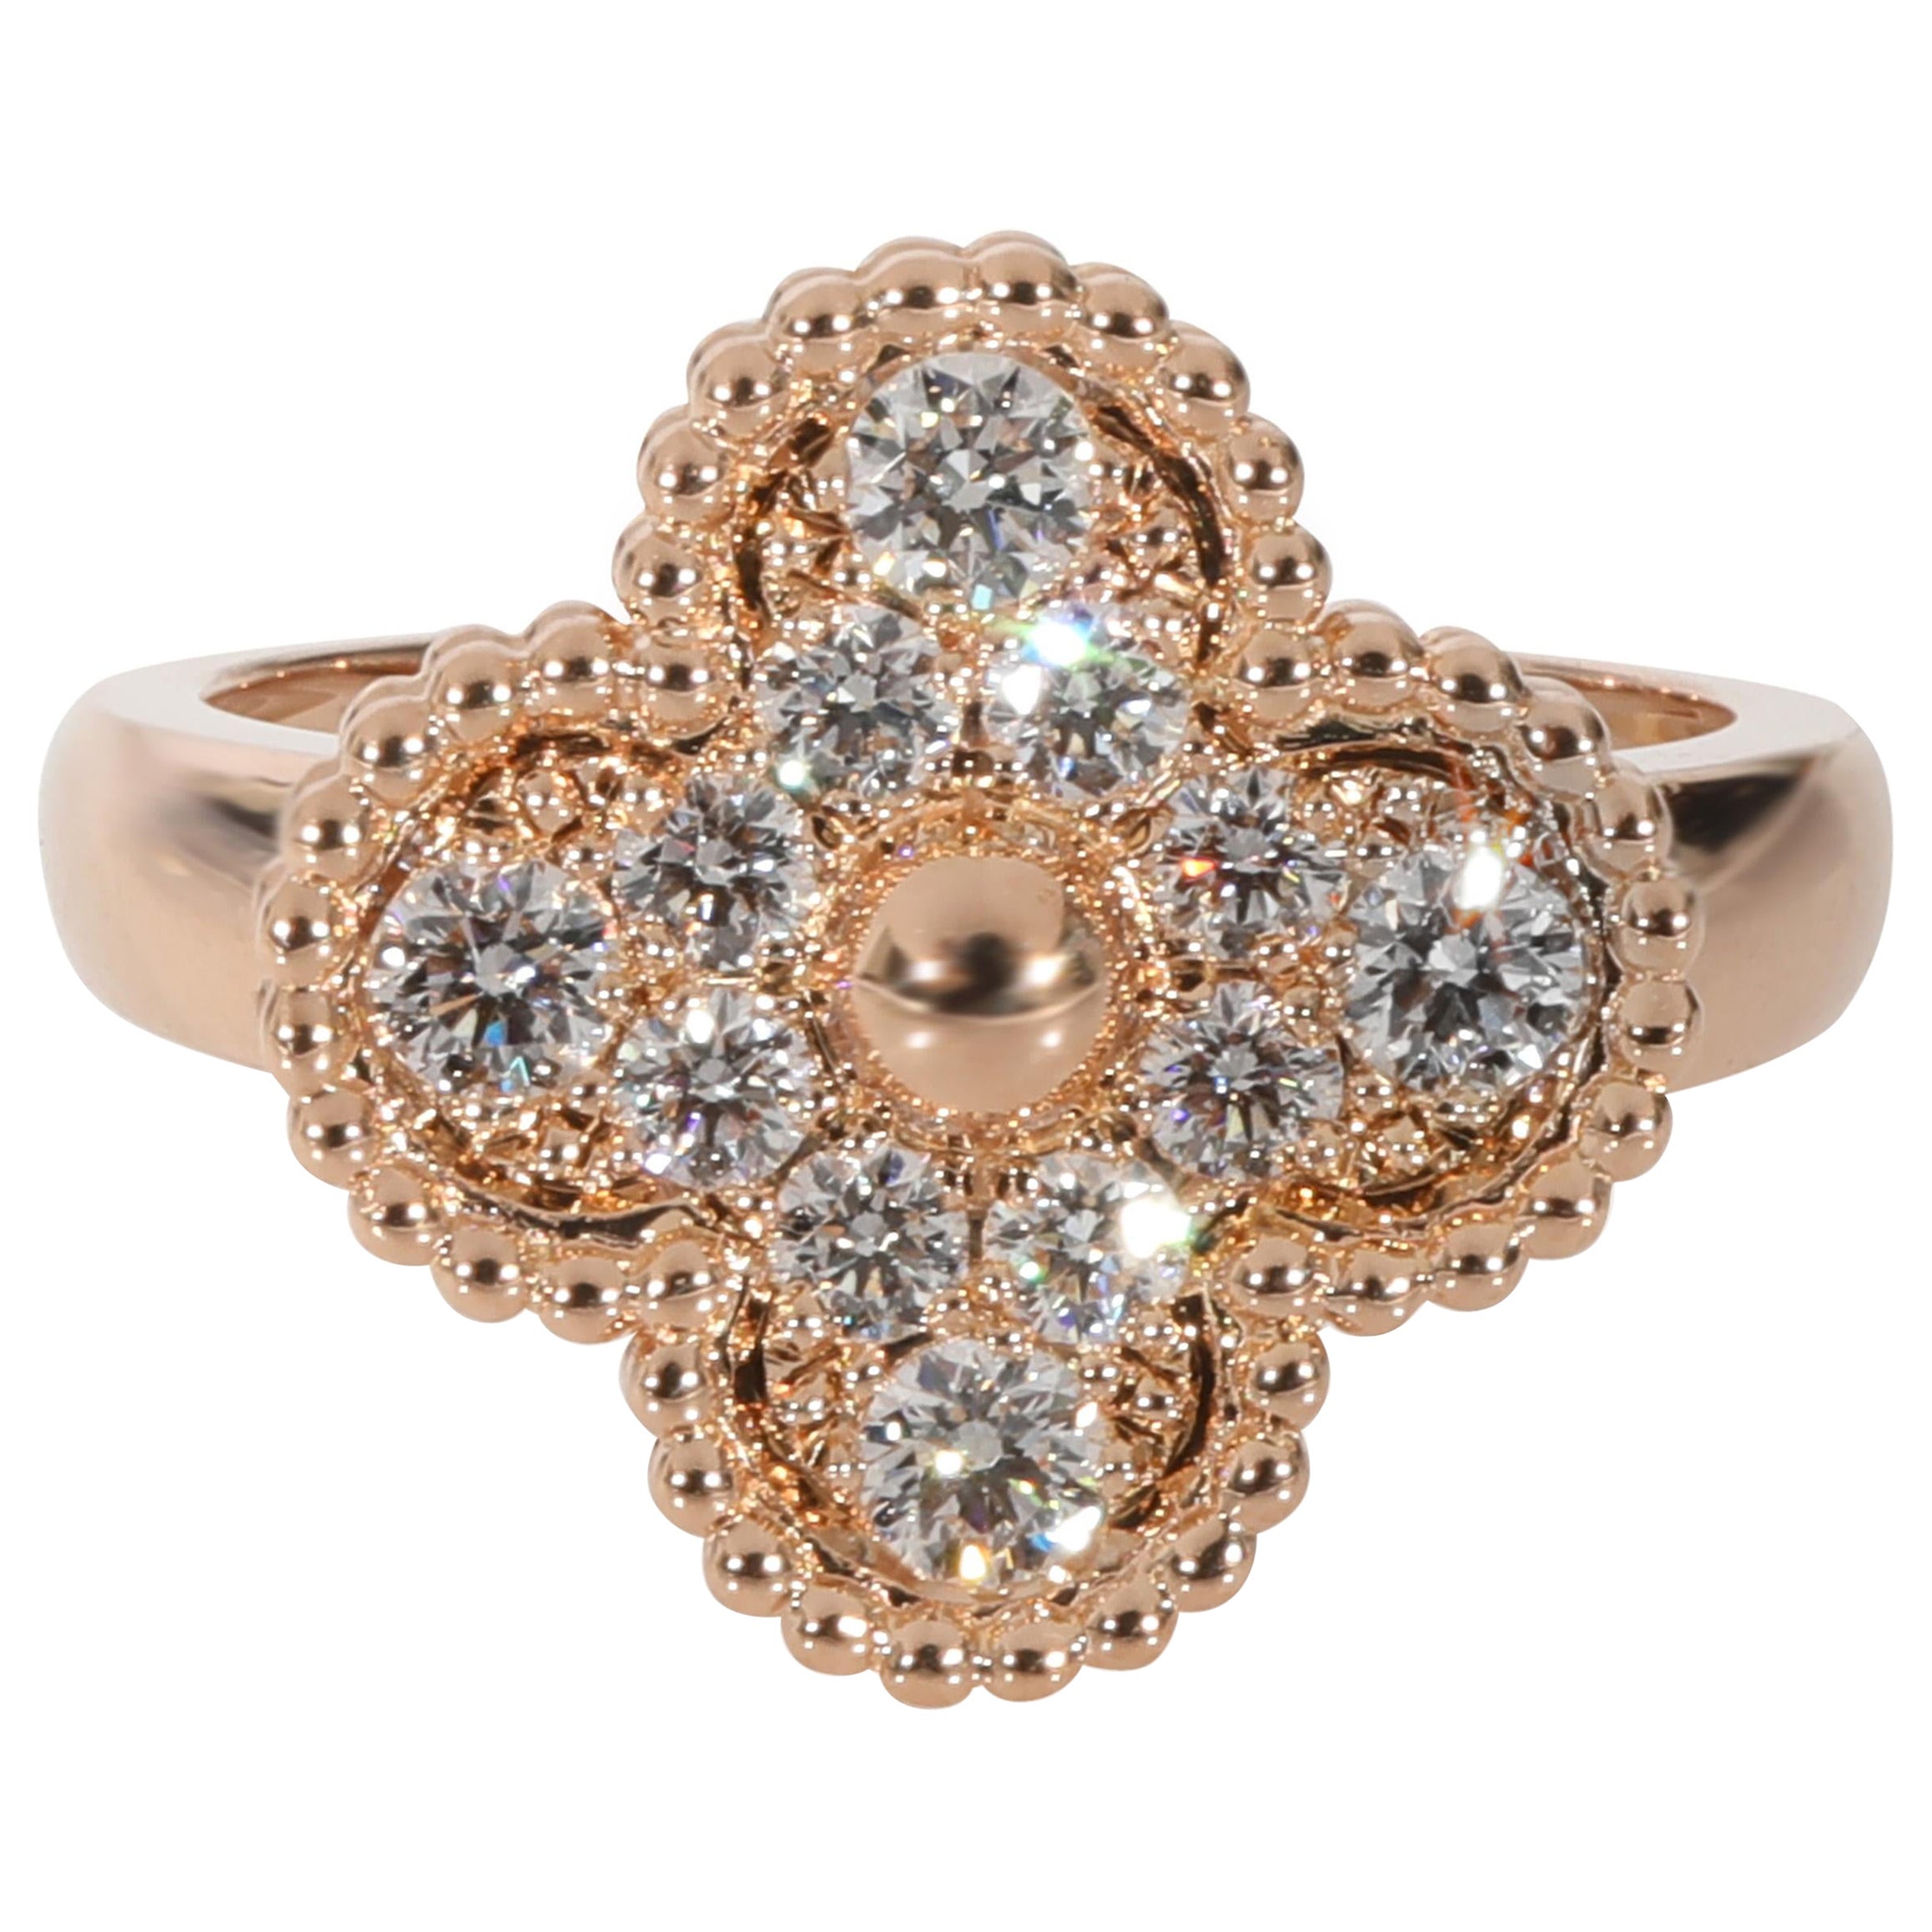 Van Cleef & Arpels Vintage Alhambra Diamond Ring in 18k Rose Gold 0.48 Ctw